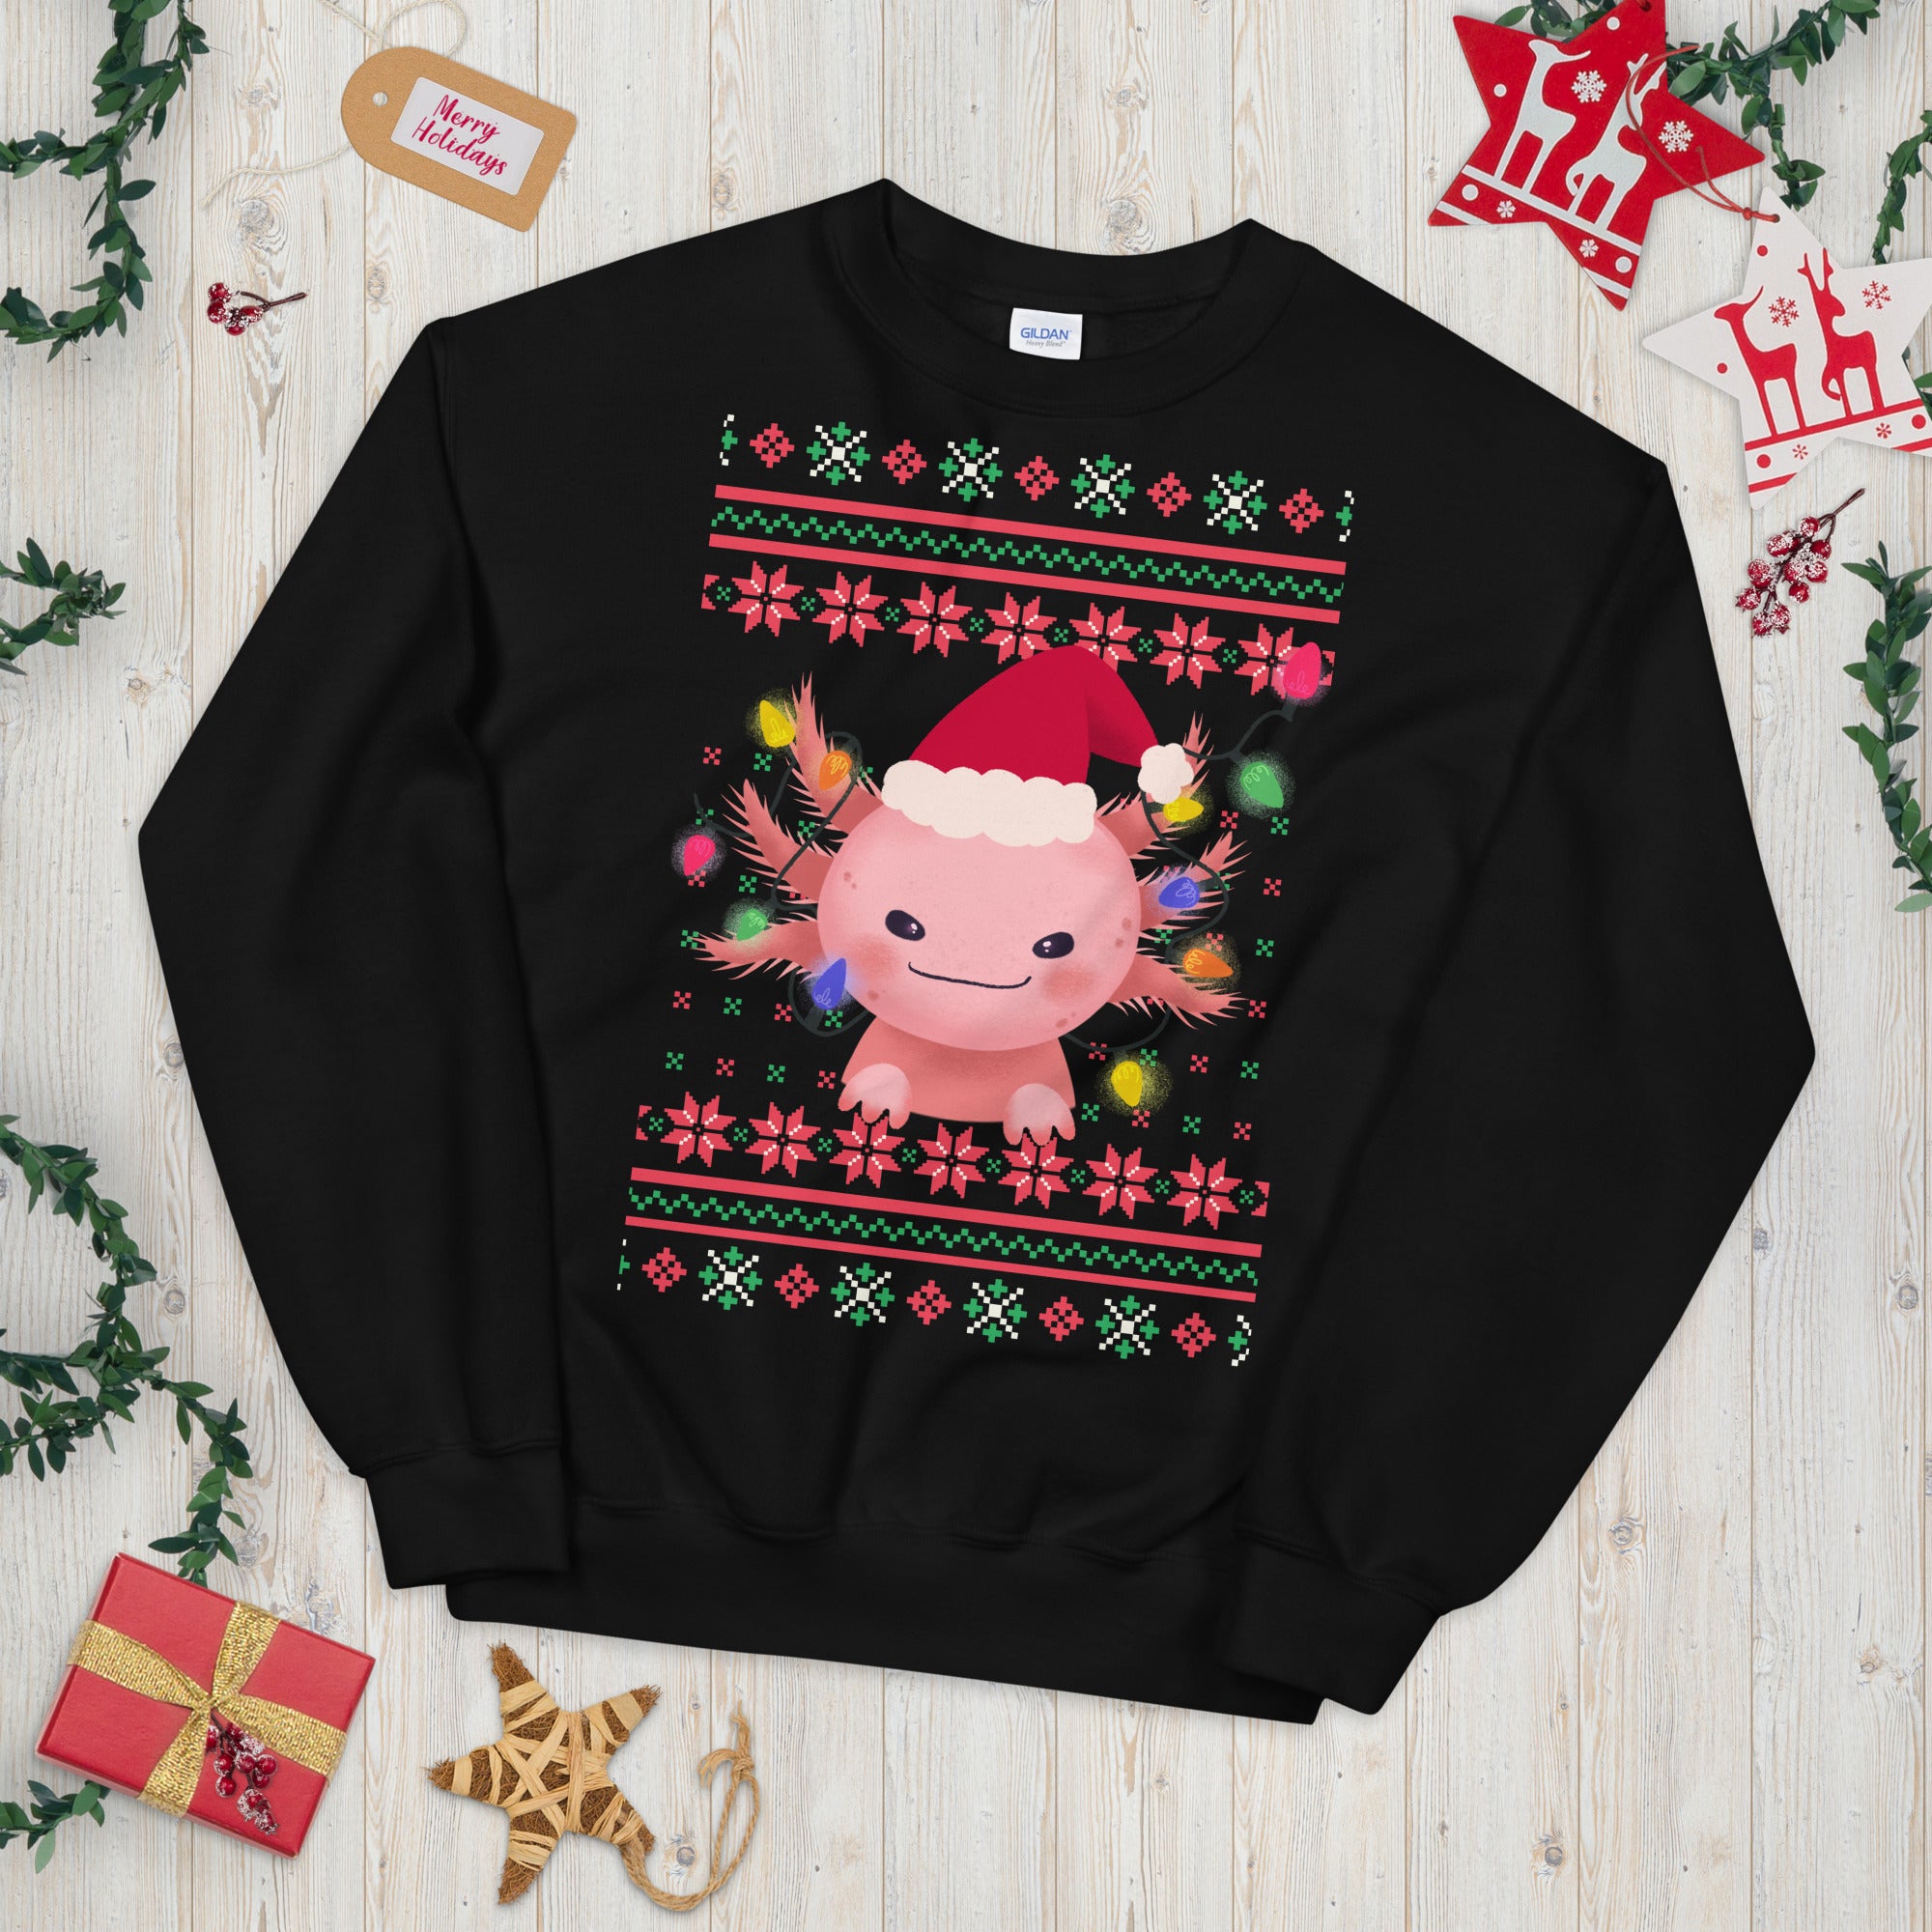 Axolotl Christmas Sweatshirt, Axolotl Ugly Christmas Sweatshirt, Santa Axolotl Sweatshirt, Axolotl Ugly Sweatshirt, Axolotl Xmas Gift